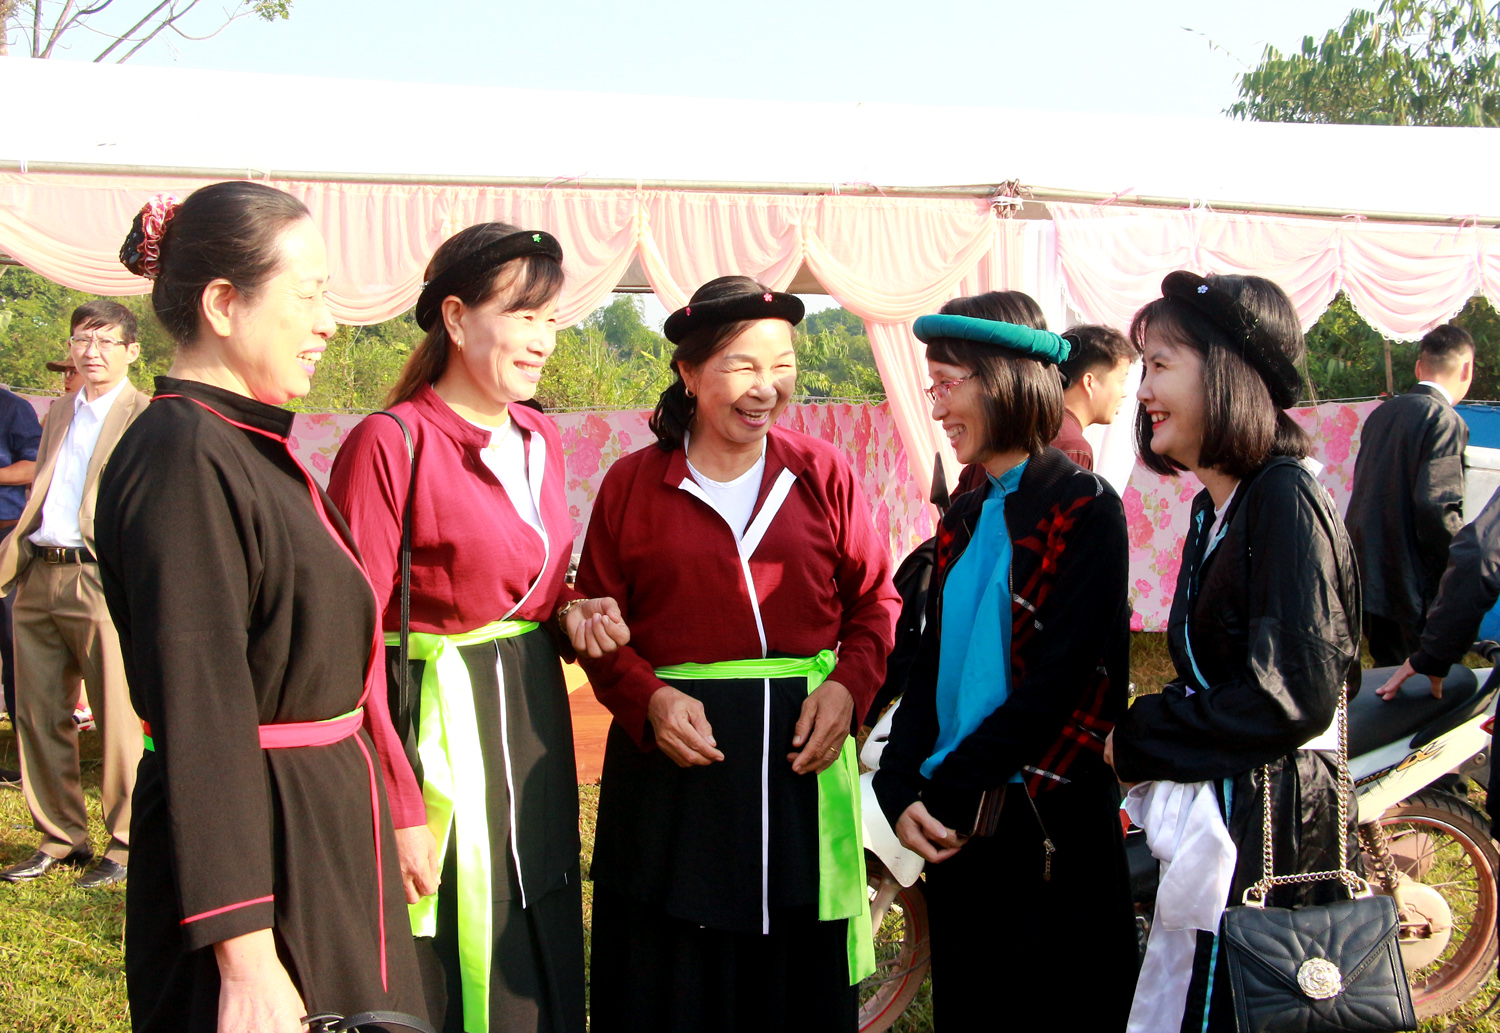 Ngày hội là dịp để các dân tộc cùng sinh sống trên địa bàn huyện Vân Đồn gặp gỡ, trao đổi.